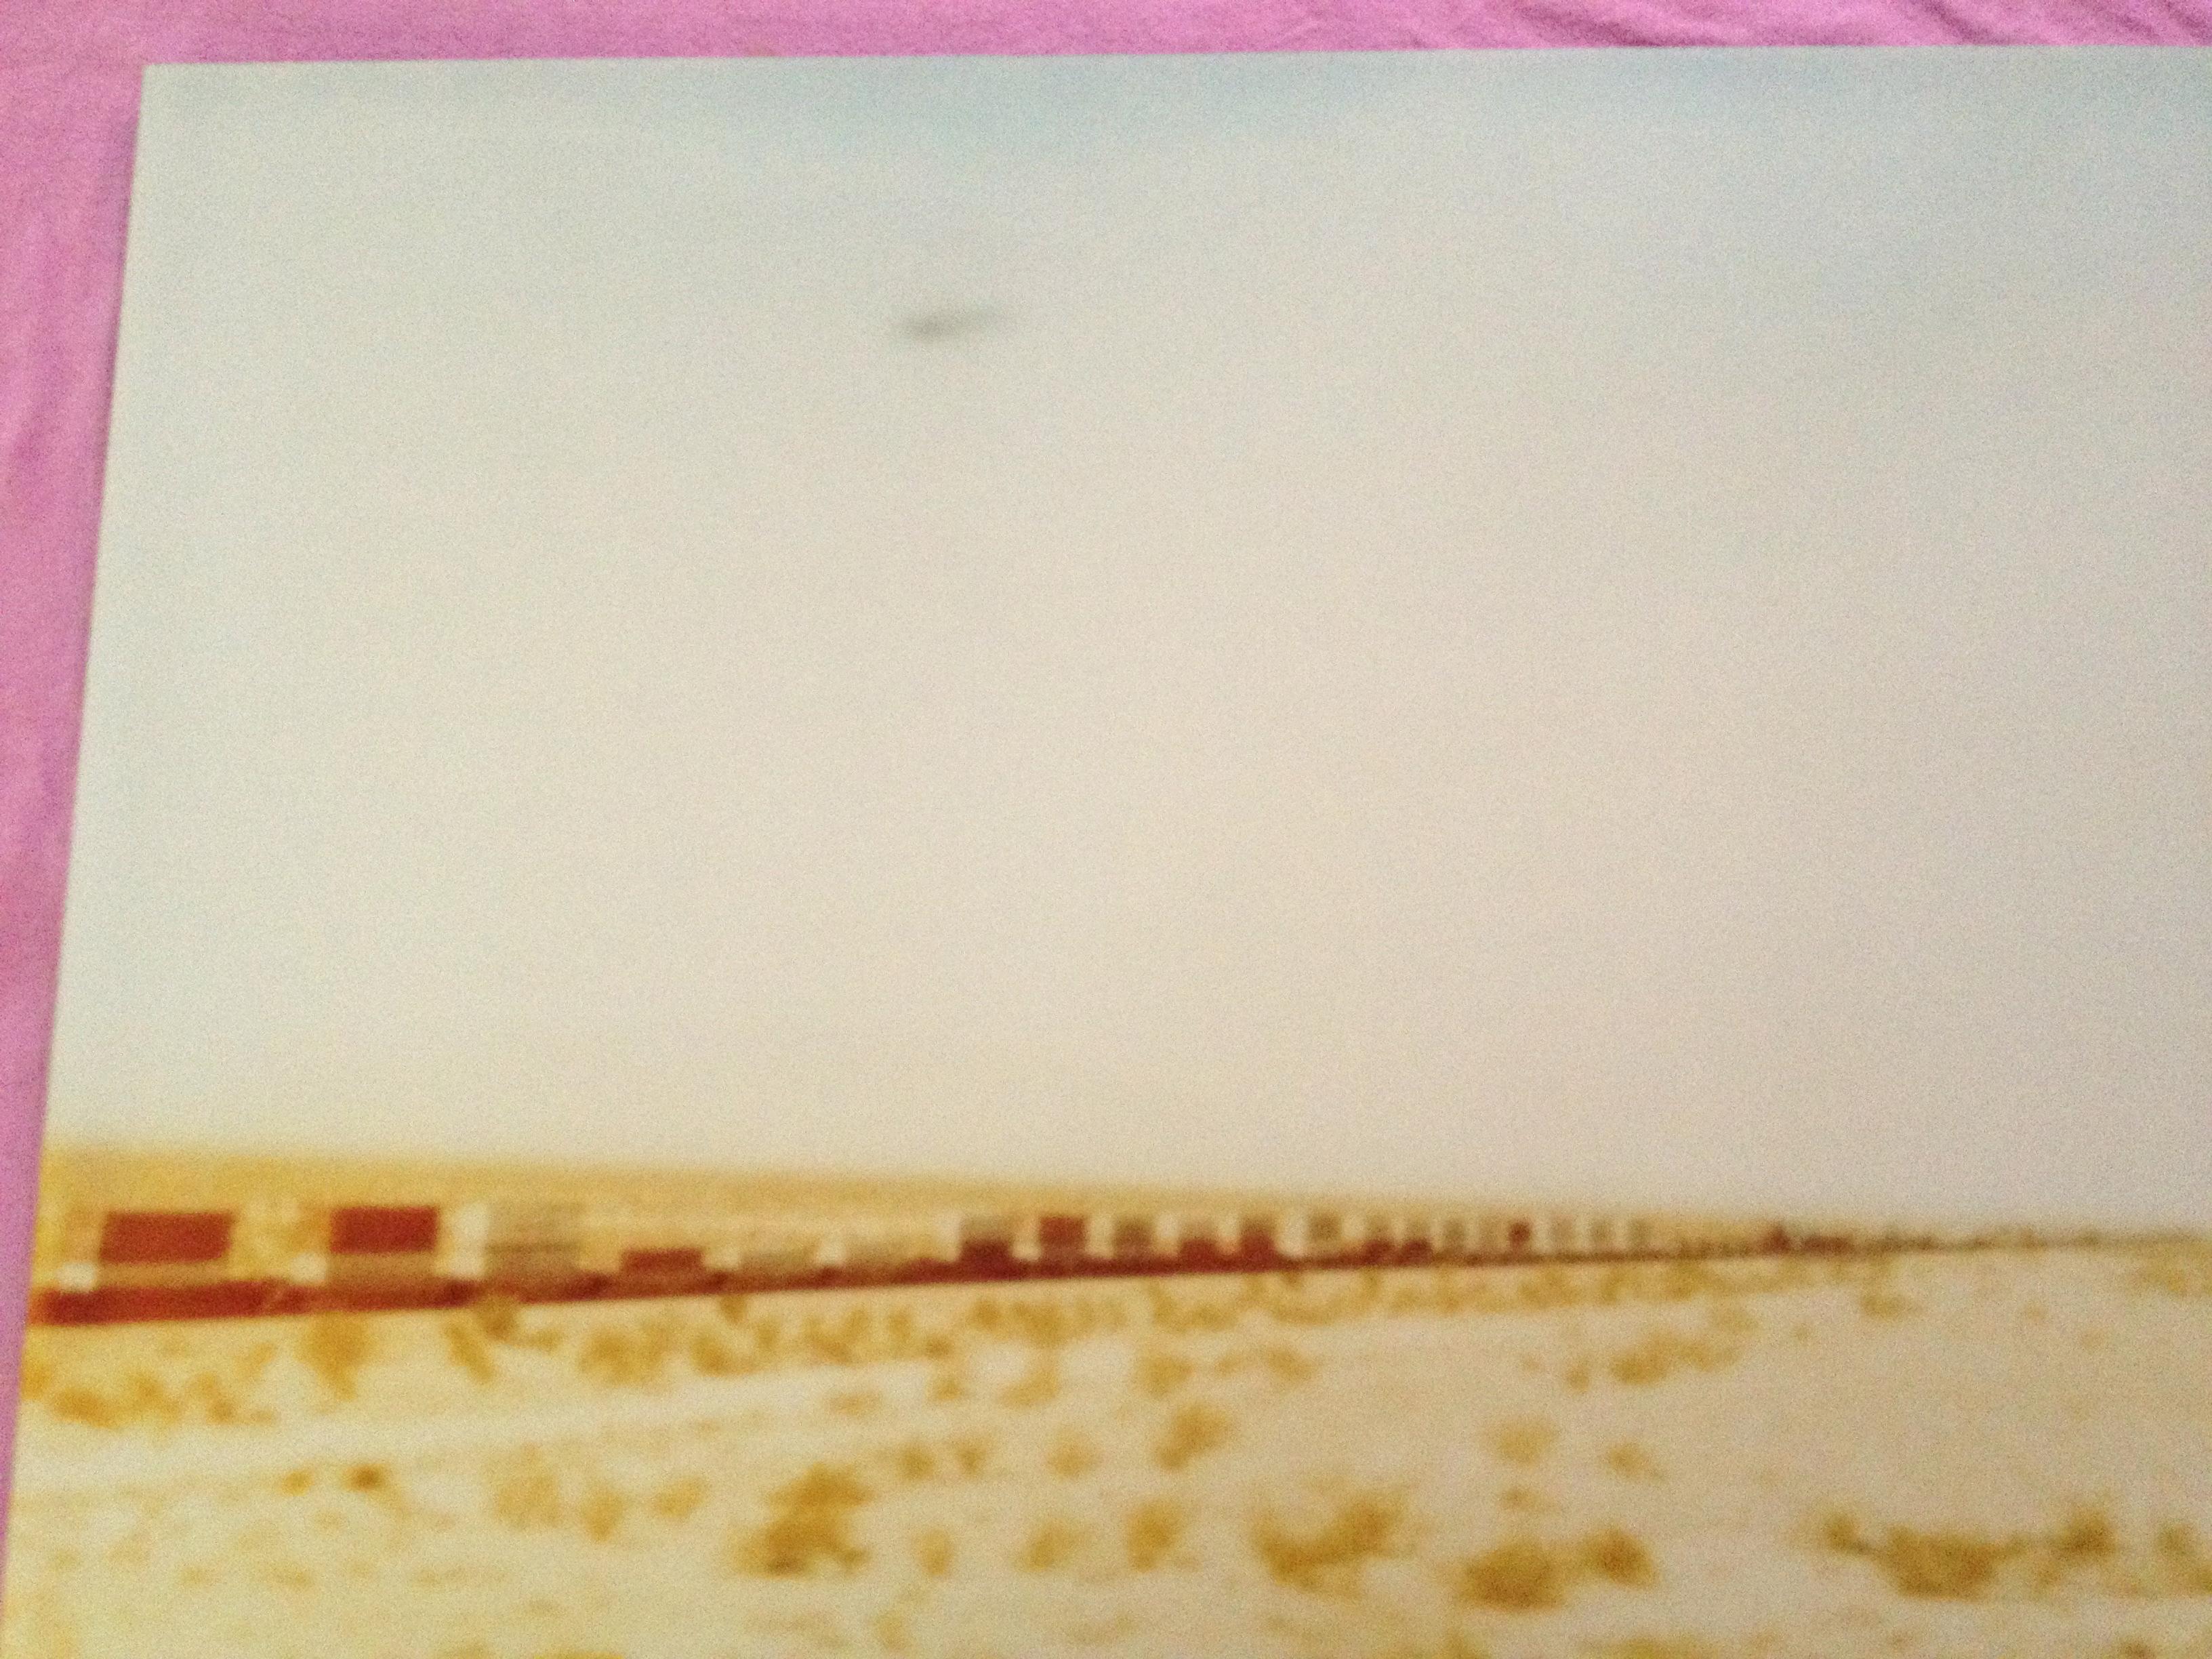 Croix de train Plain (Wastelands) - impression analogique à la main, montée - Polaroid, couleur - Beige Landscape Photograph par Stefanie Schneider